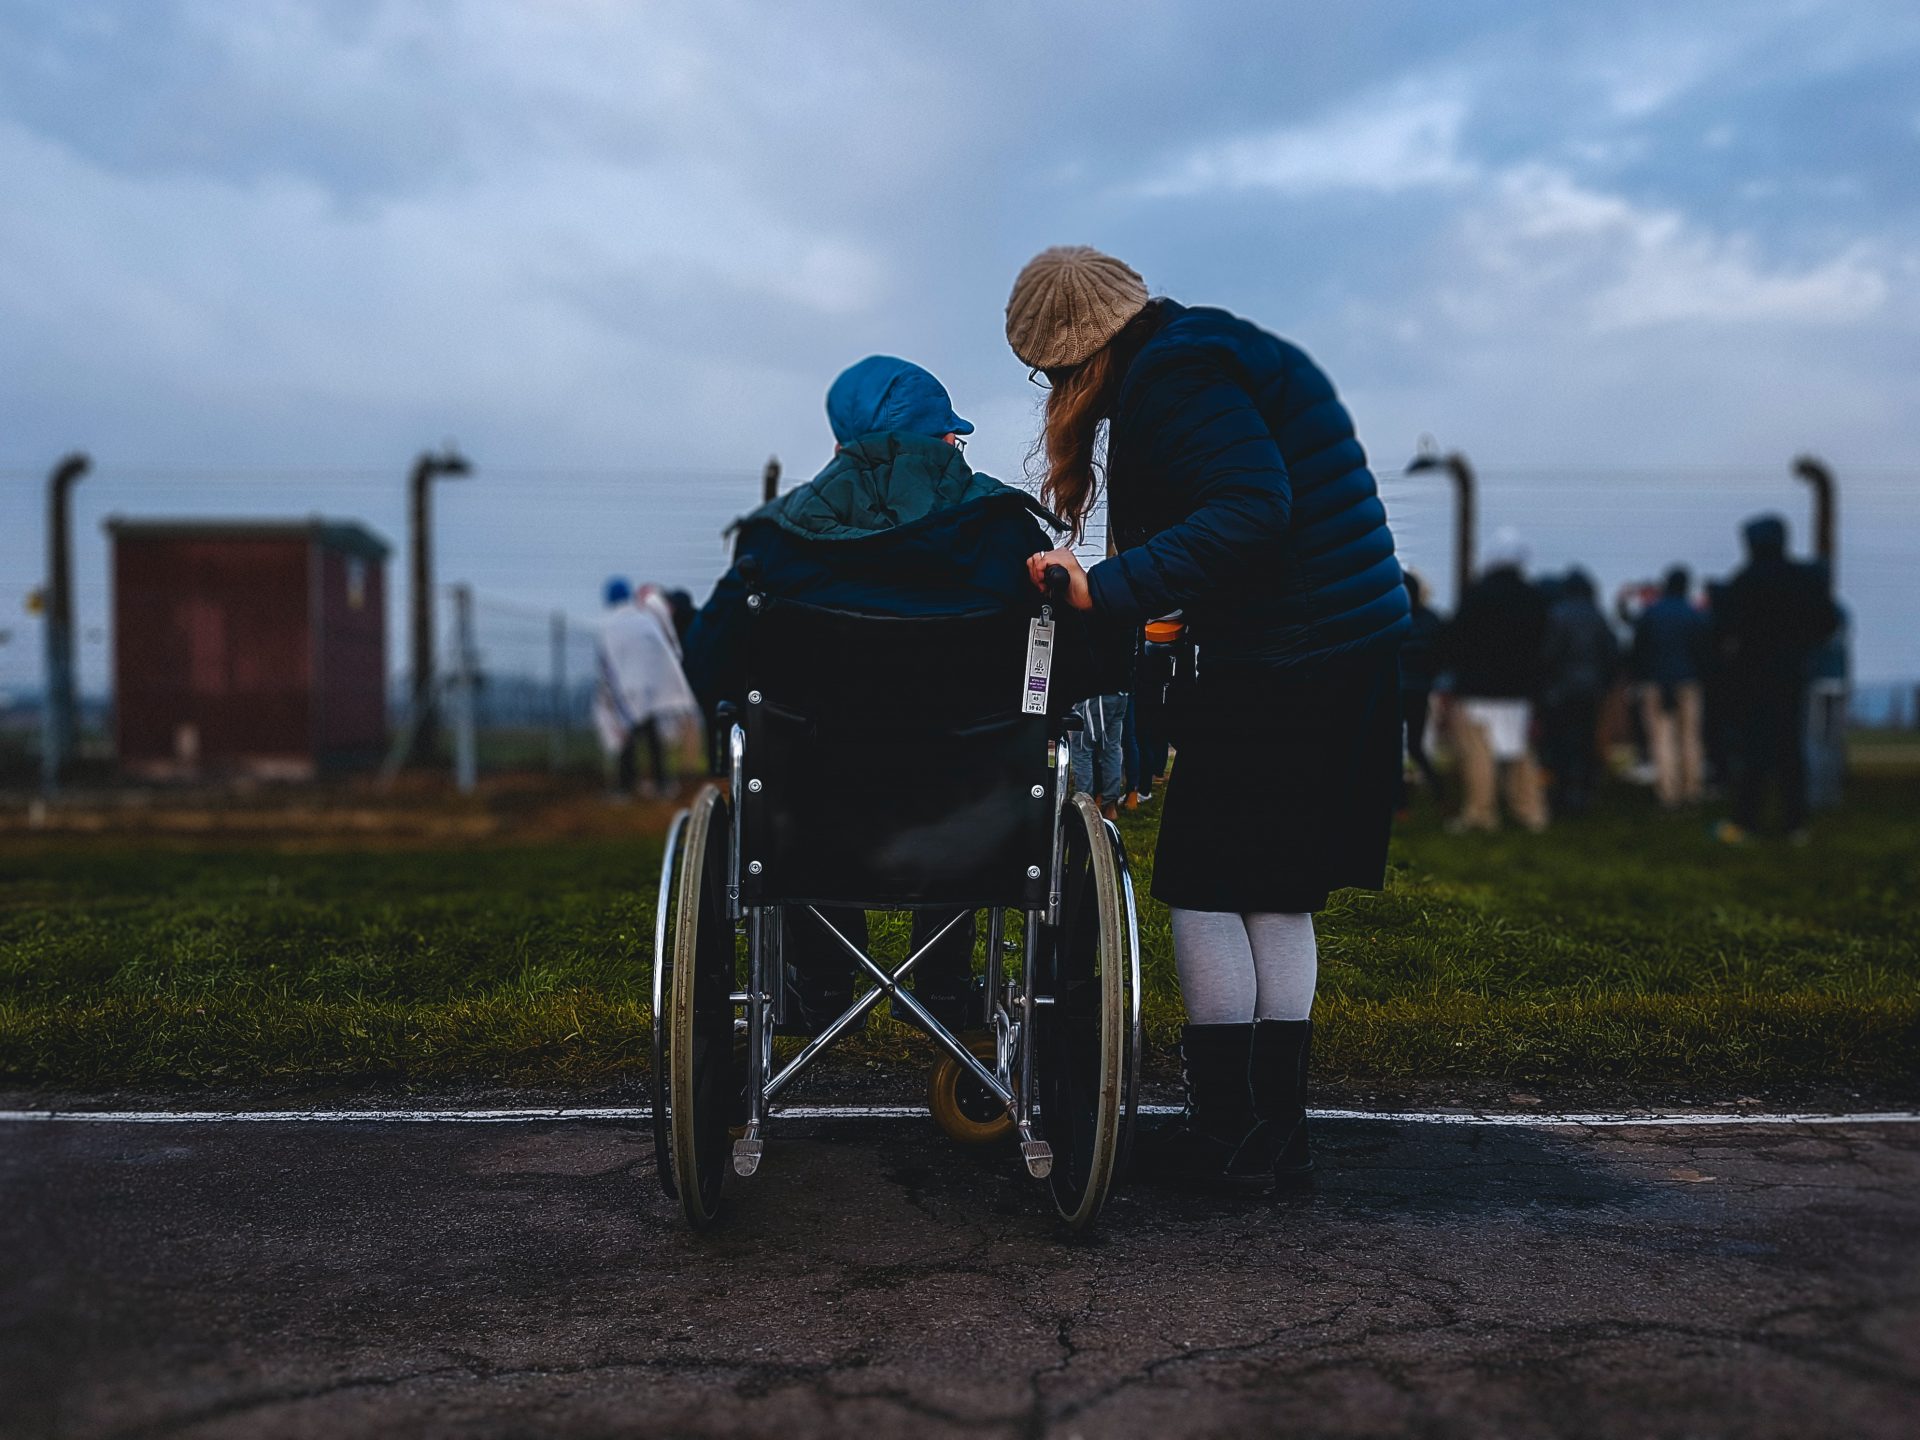 Una persona in sedia a rotelle con vicino una persona in piedi, entrambe di spalle, davanti a un parco cittadino con un cielo scuro